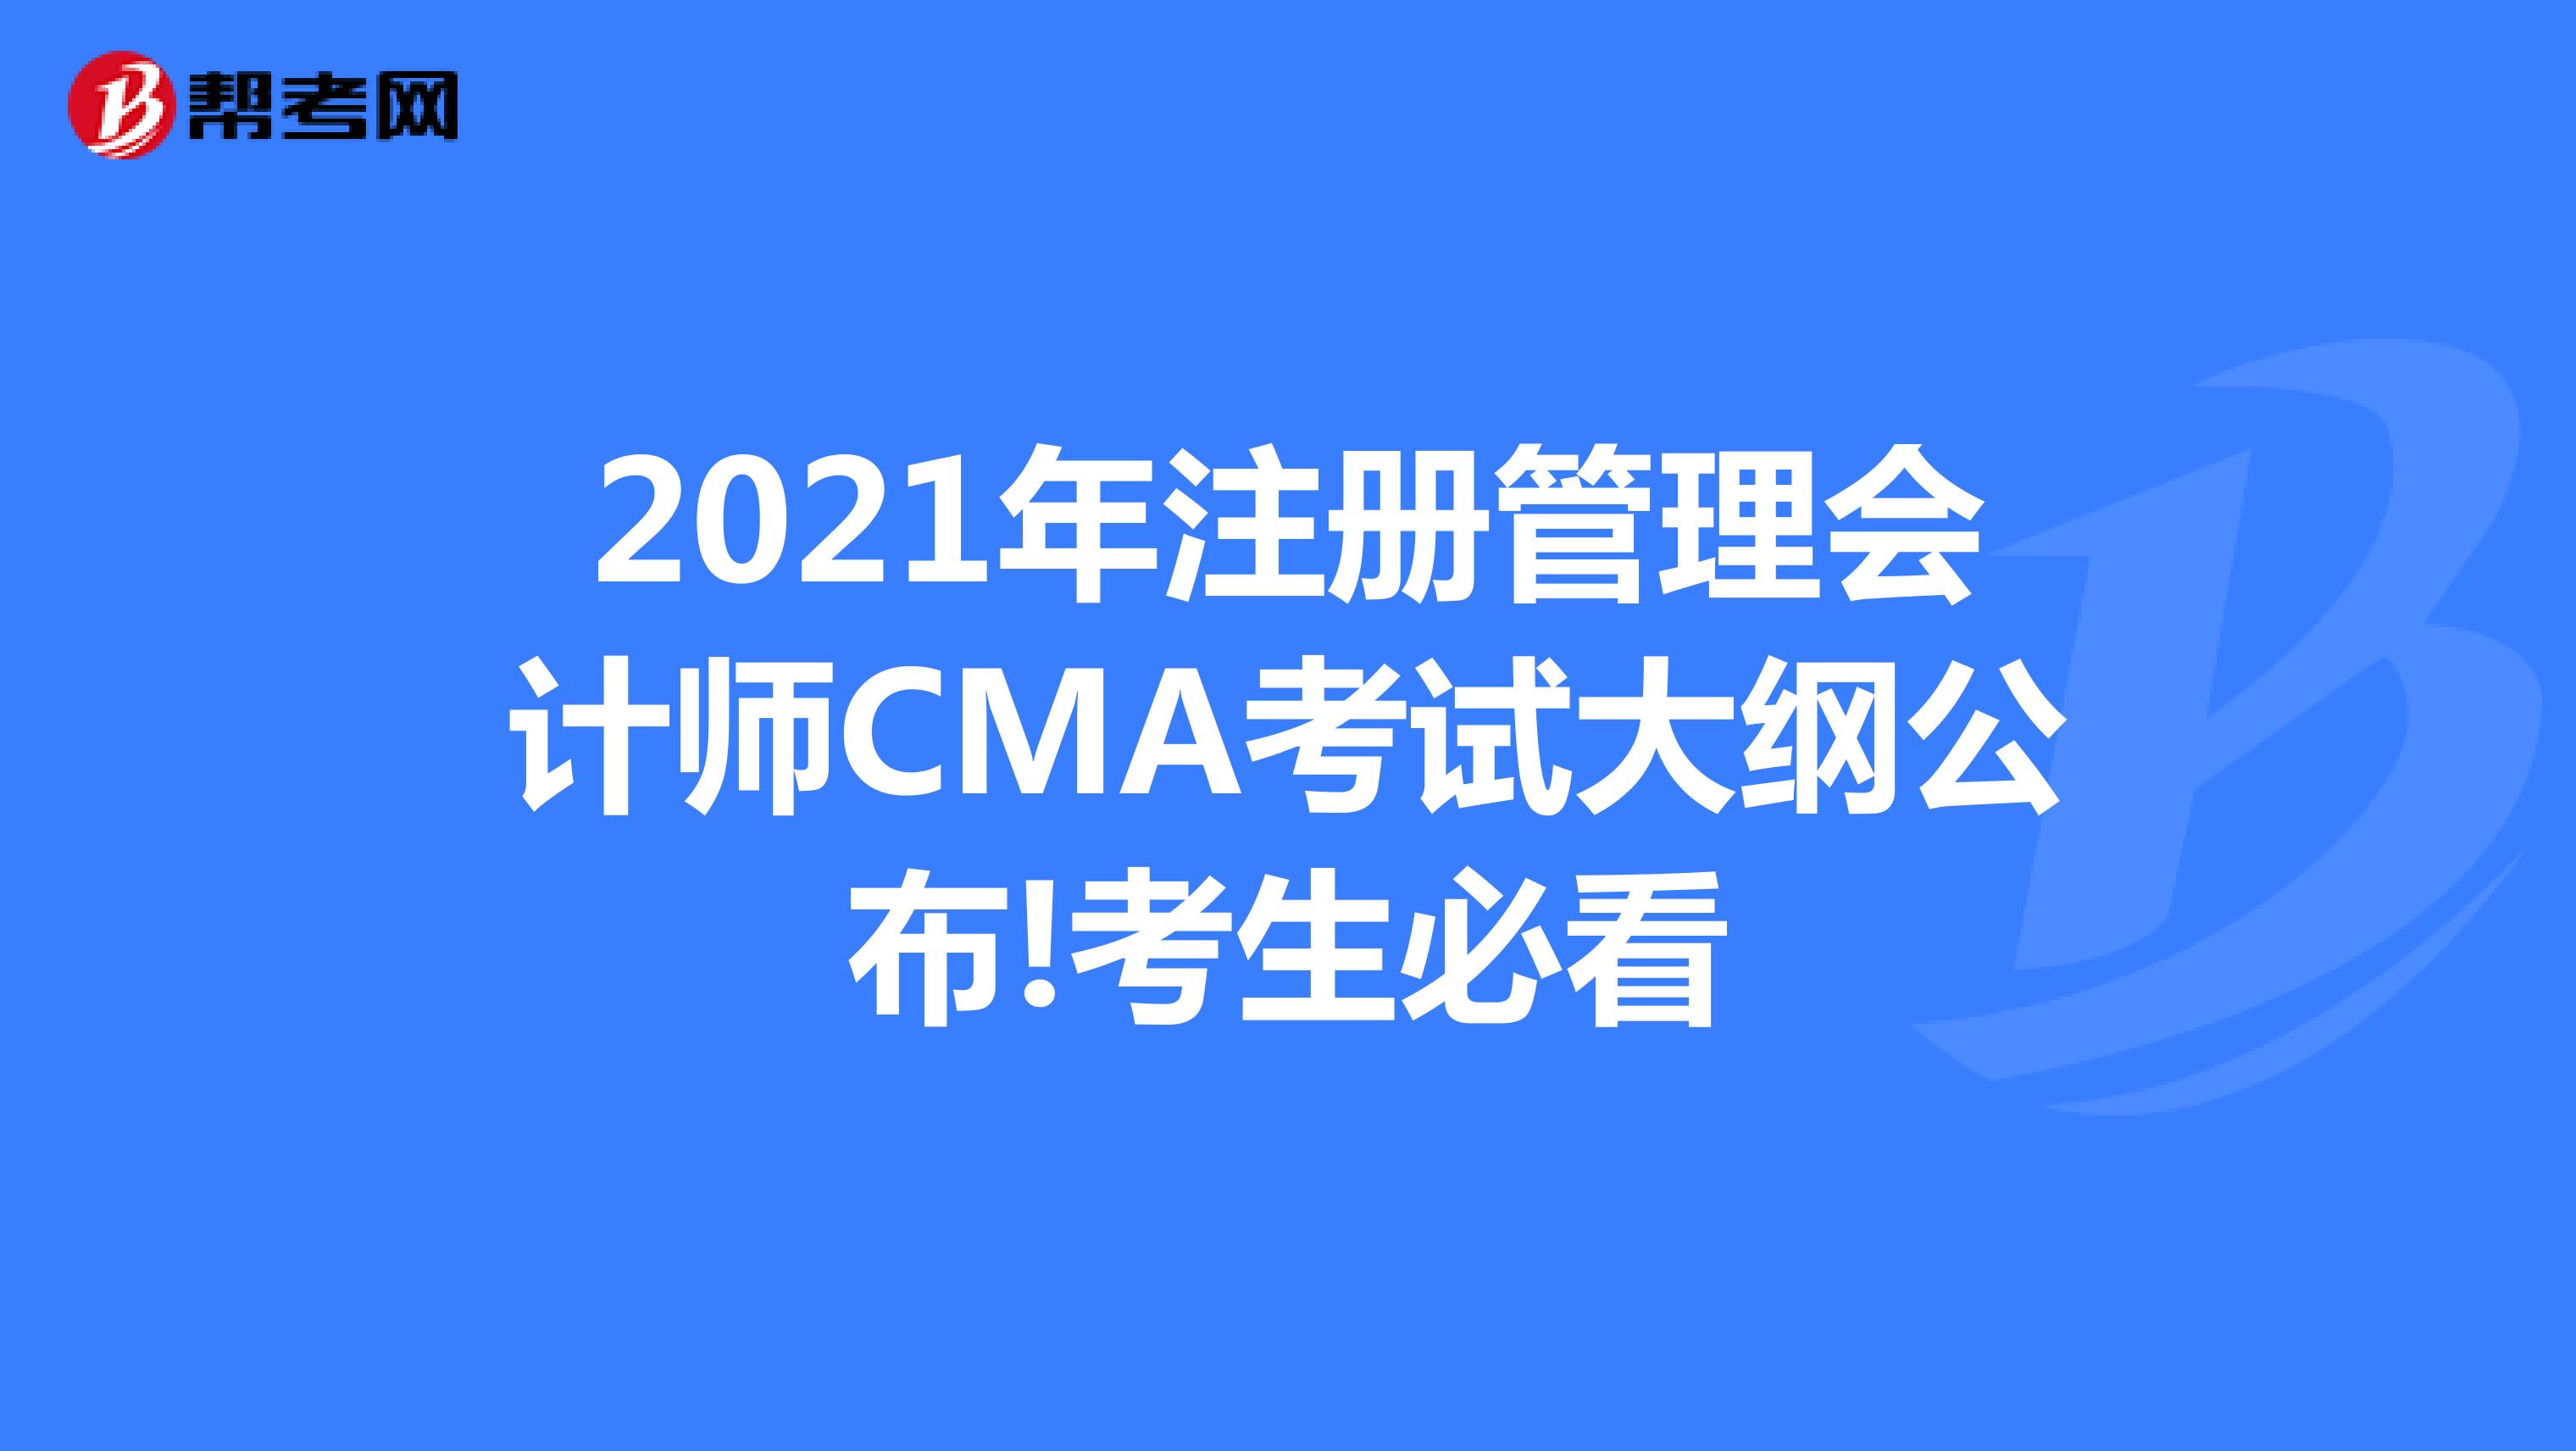 2021年注册管理会计师CMA考试大纲公布!考生必看